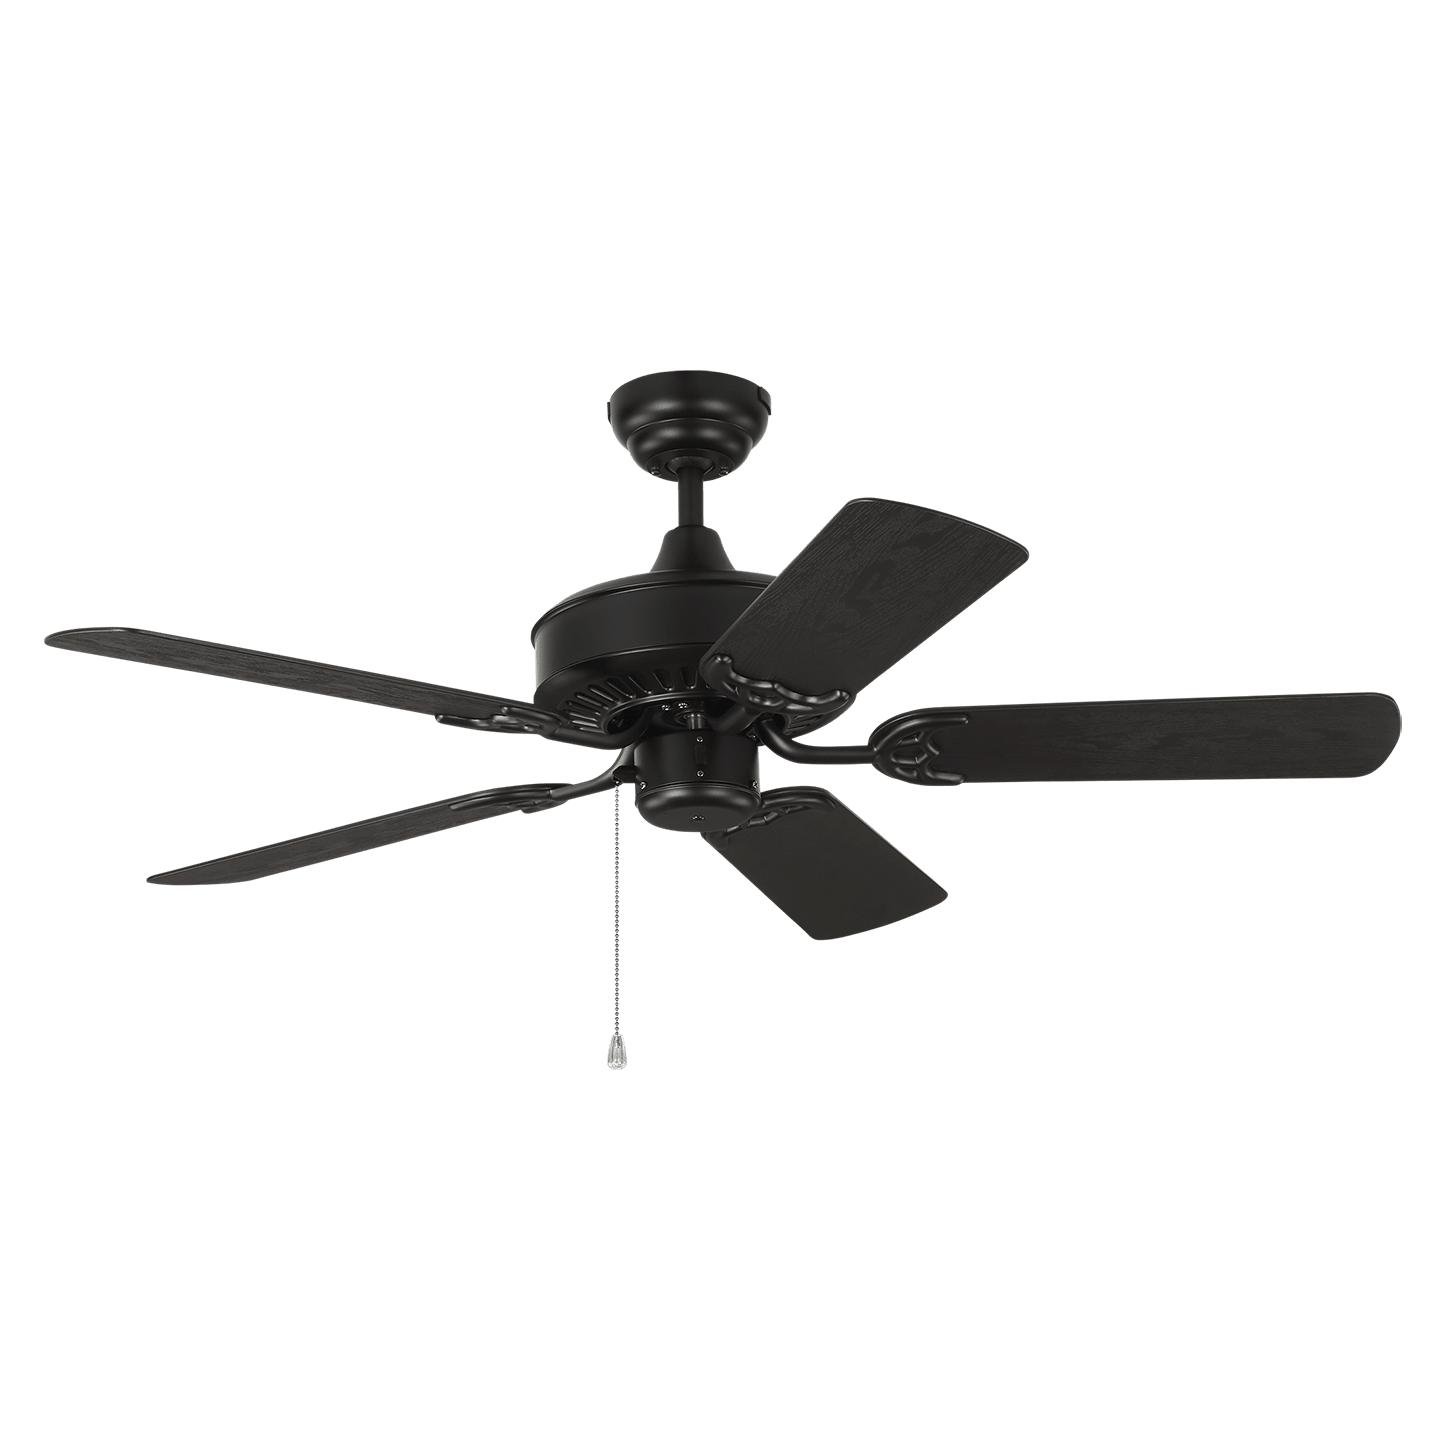 Купить Потолочный вентилятор Haven Outdoor 44" Ceiling Fan в интернет-магазине roooms.ru